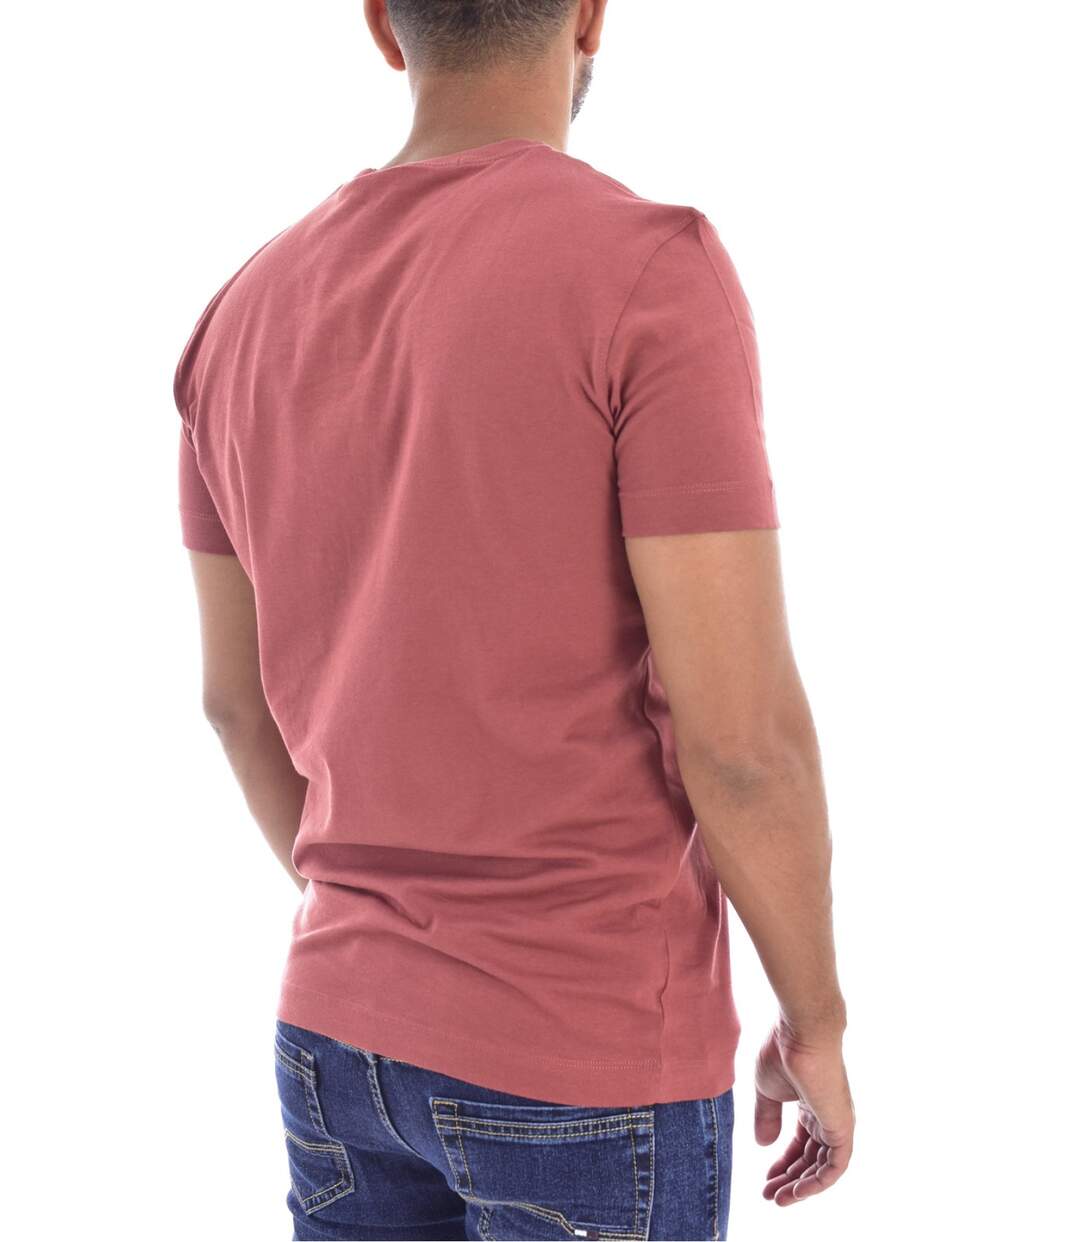 Tee shirt logo en coton bio  -  Calvin klein - Homme